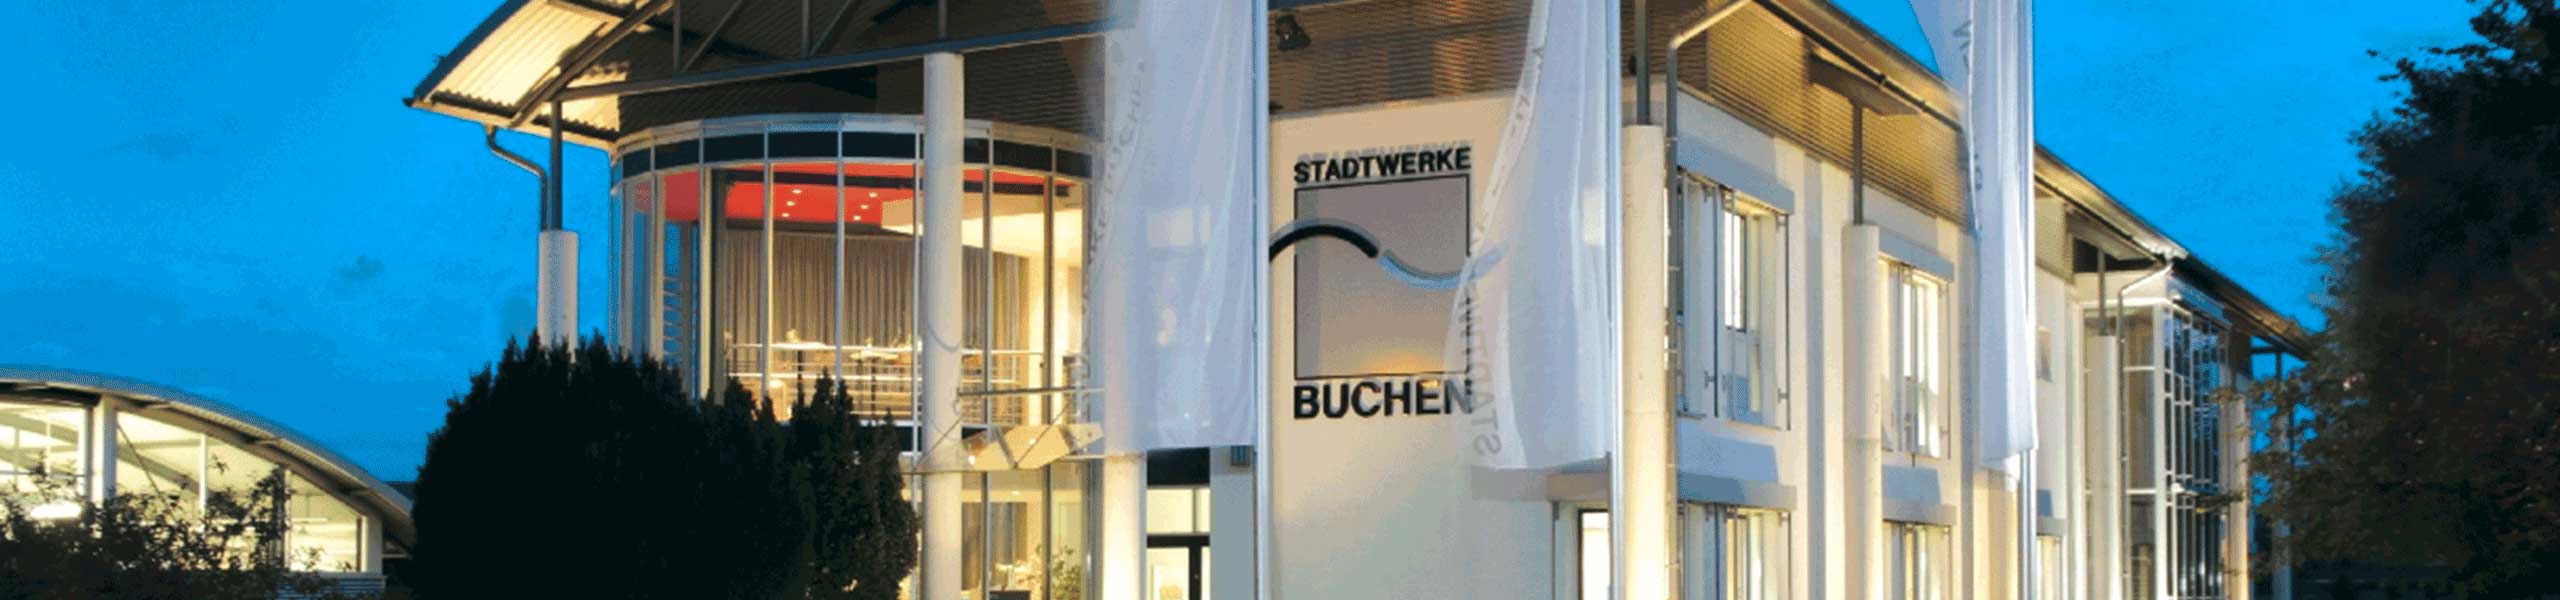 Stadtwerke Buchen GmbH & Co KG - Bäder